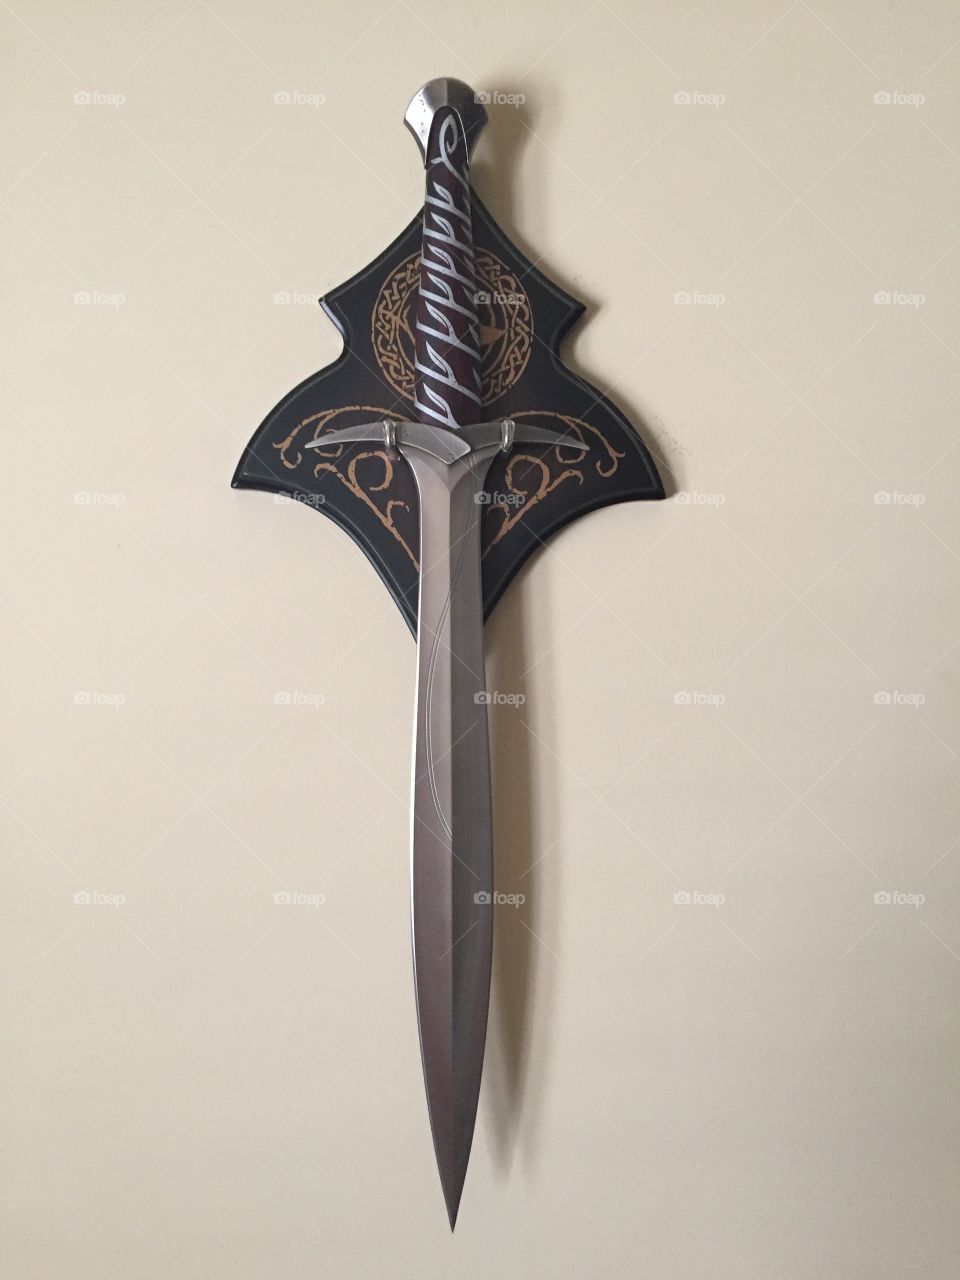 Hobbit Sword 